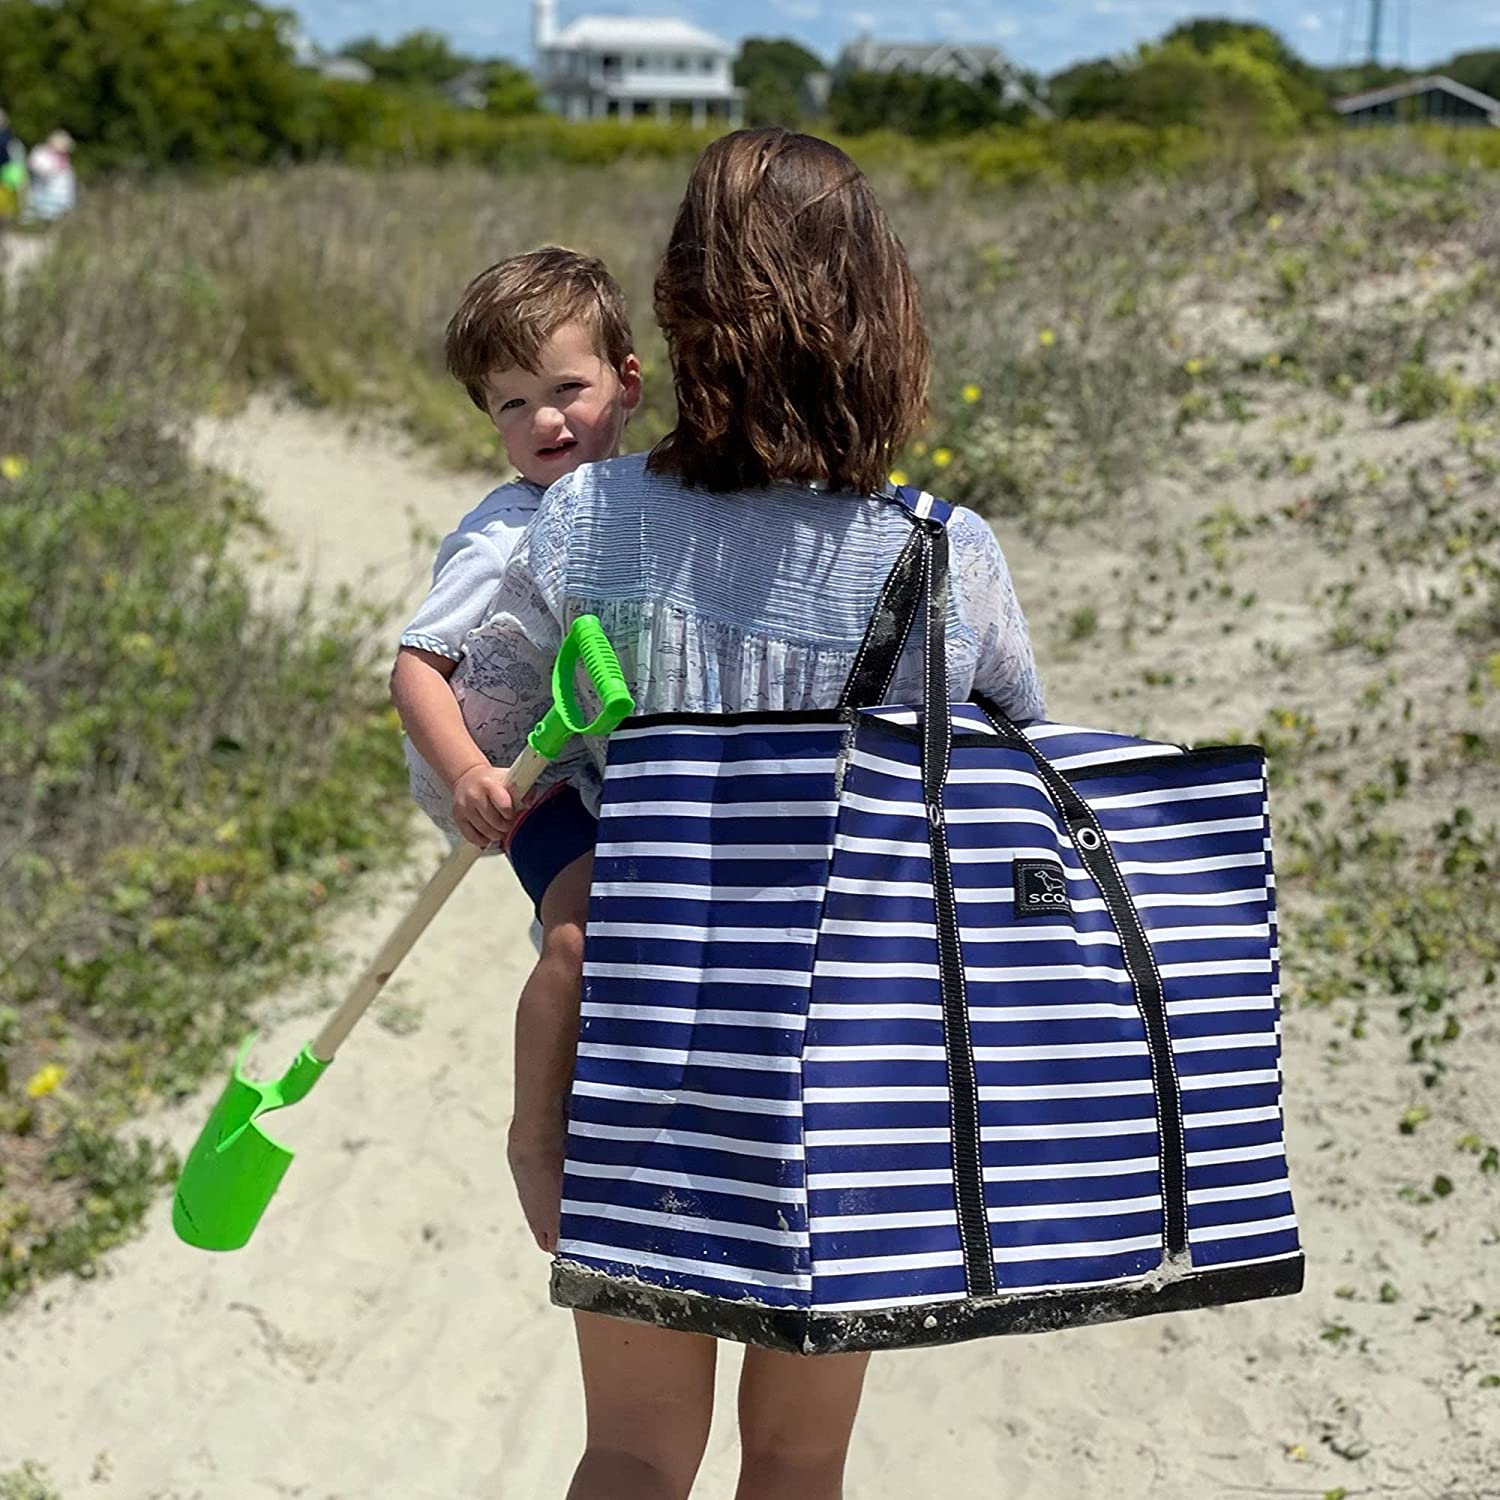 Ladies Large Beach Shoulder Bag Holiday Tote Shopping Reusable Handbag Canvas